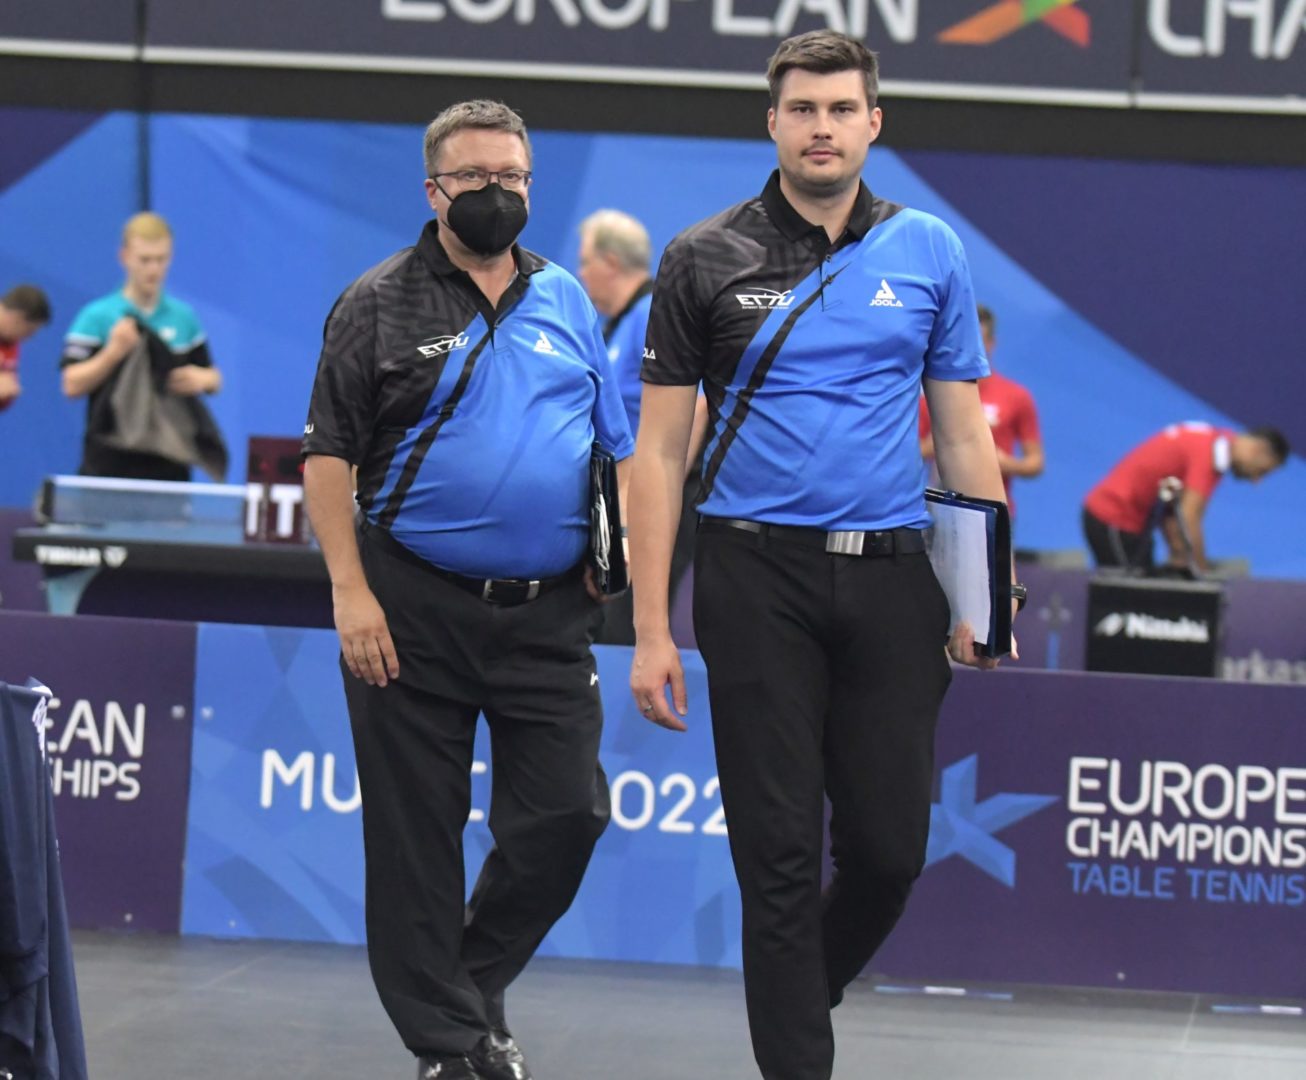 Zwei ehemalige Brandenburger von der Landesmeisterschaft zur Europameisterschaft